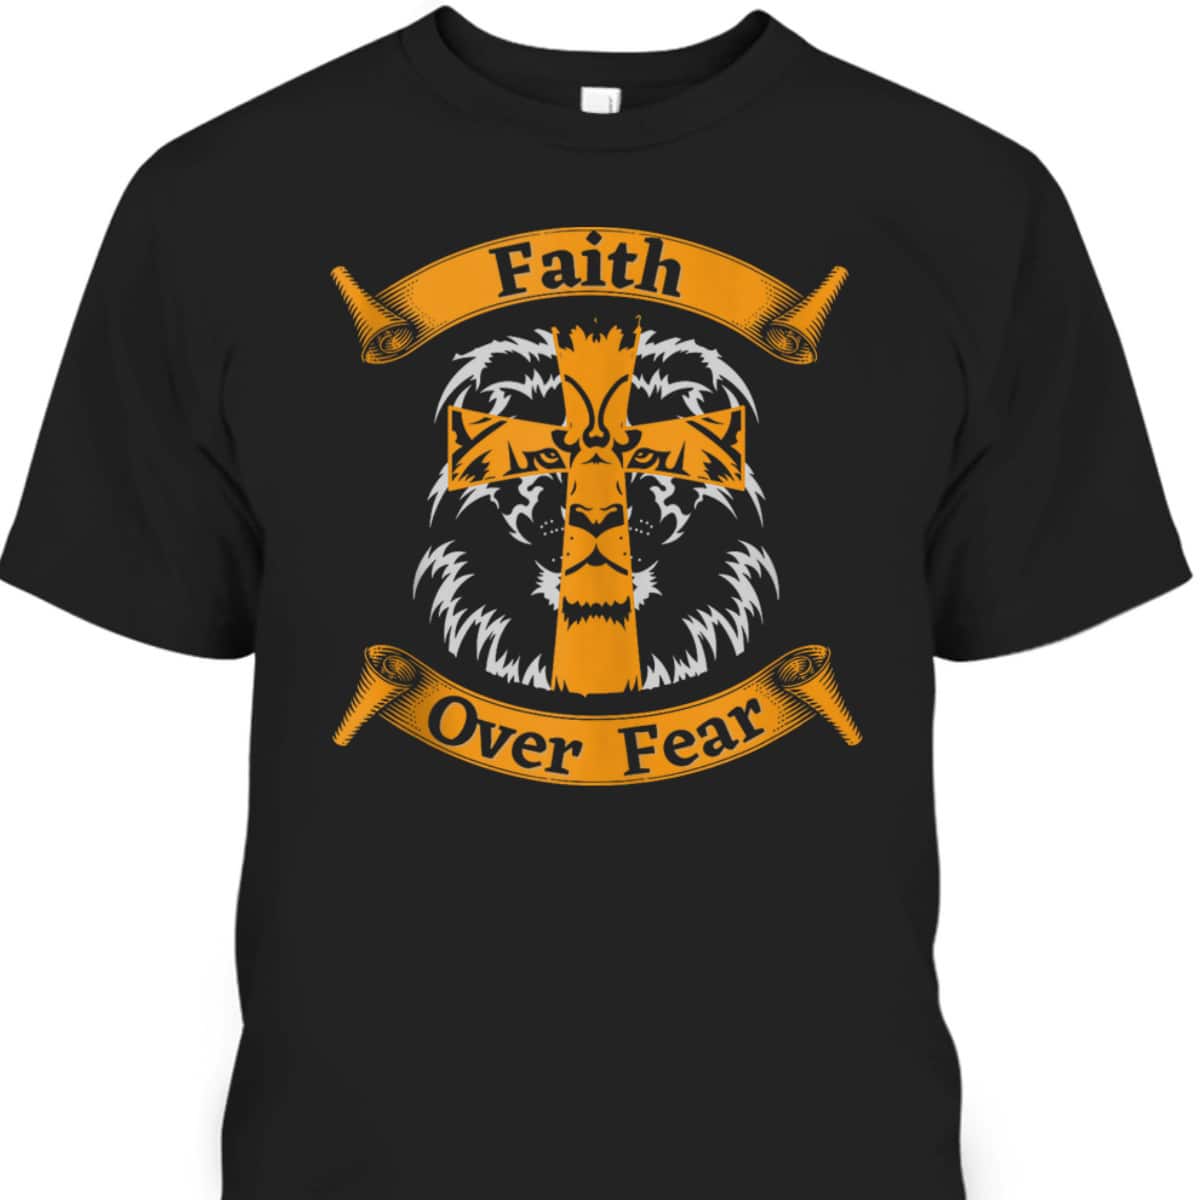 Faith Over Fear T-Shirt With Christian Cross And Lion Of Judah